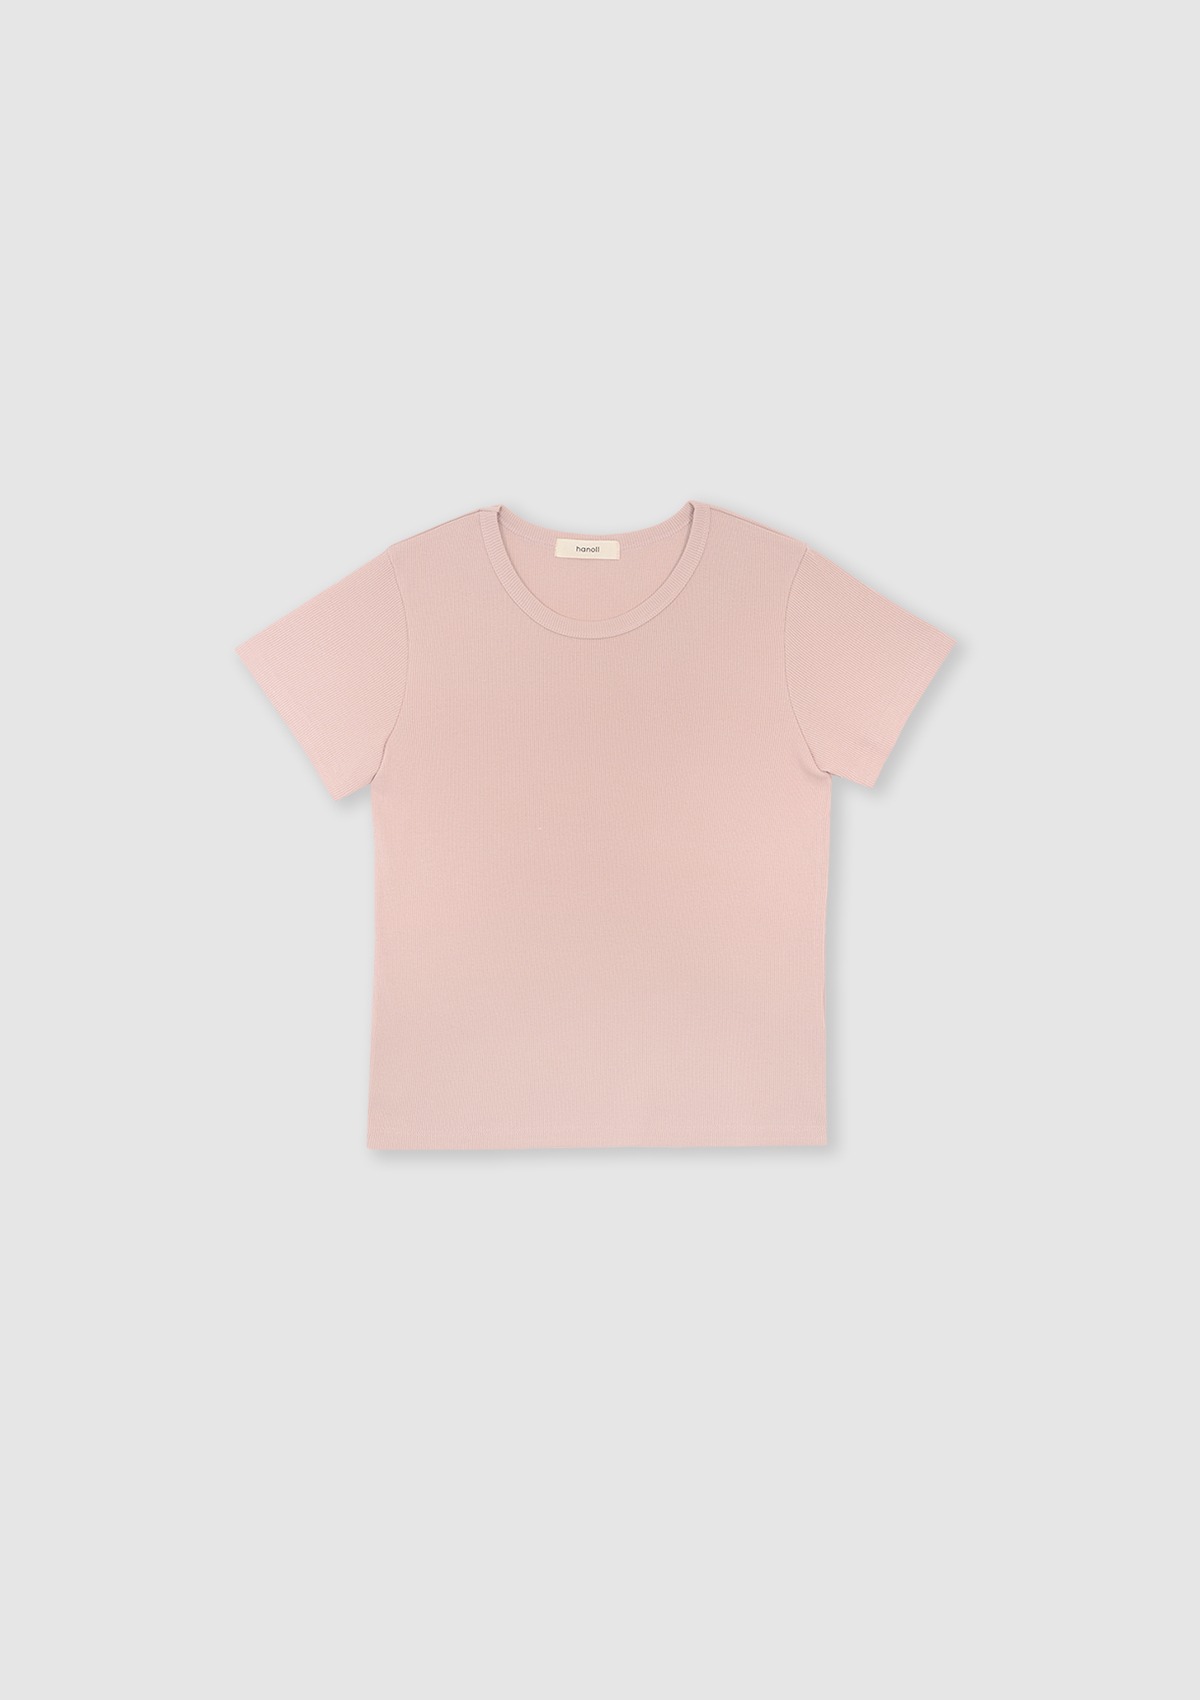 Noah T-shirt (Light pink)